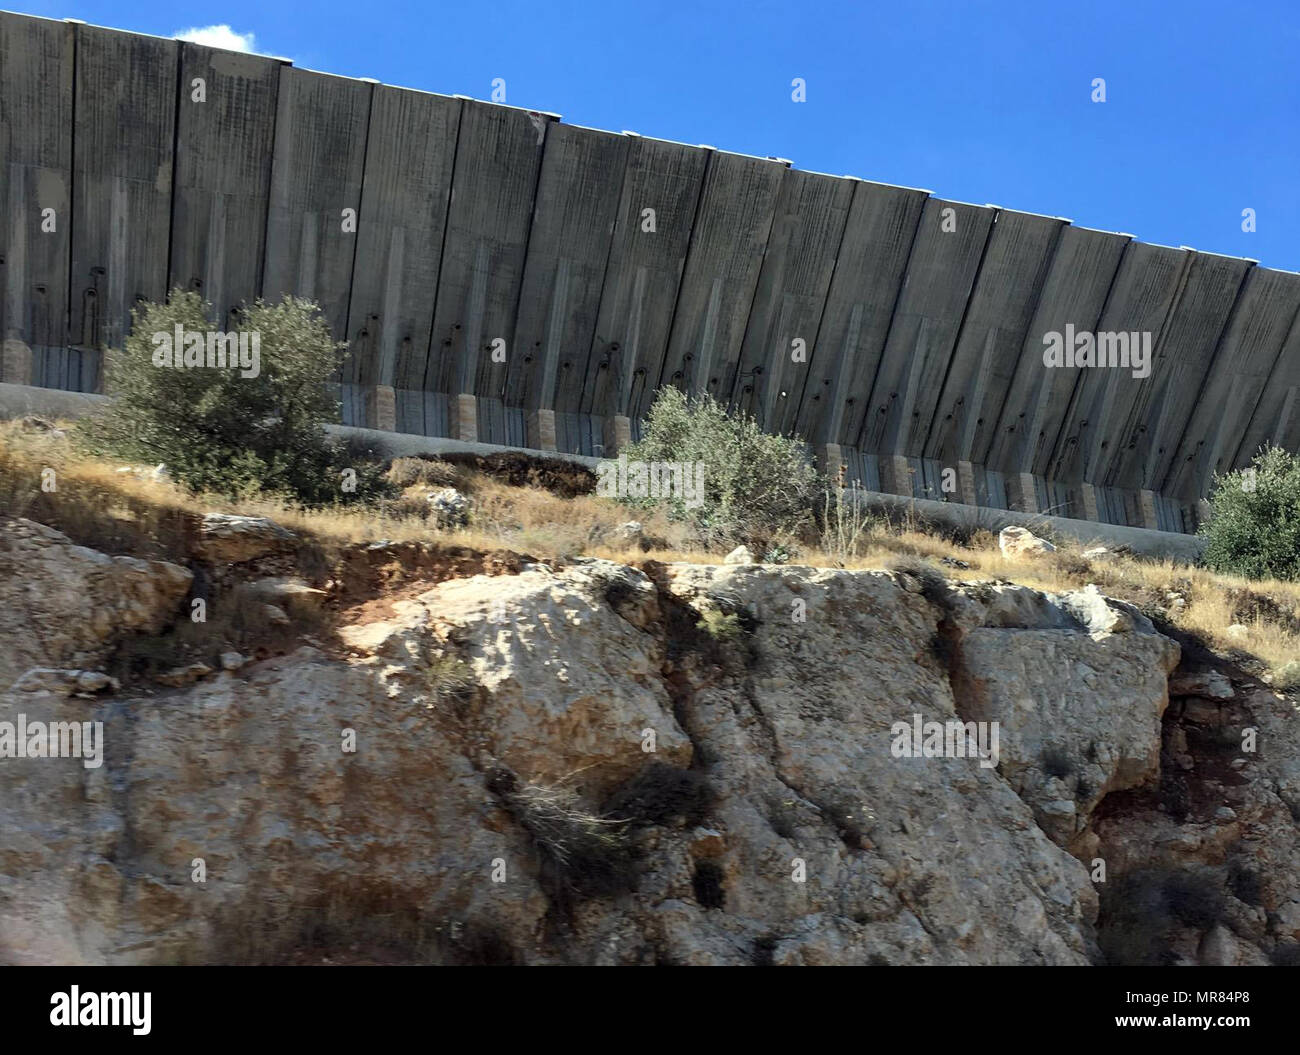 La barrera de Cisjordania de Israel o el muro es una barrera de separación en la Ribera Occidental o a lo largo de la Línea Verde. Israel considera que es una barrera de seguridad contra el terrorismo, mientras que los palestinos llaman una segregación o muro de apartheid. La barrera fue construida durante la segunda Intifada que comenzó en septiembre de 2000, y fue defendido por el gobierno israelí como sea necesario para detener la ola de violencia dentro de Israel que el levantamiento había traído consigo Foto de stock